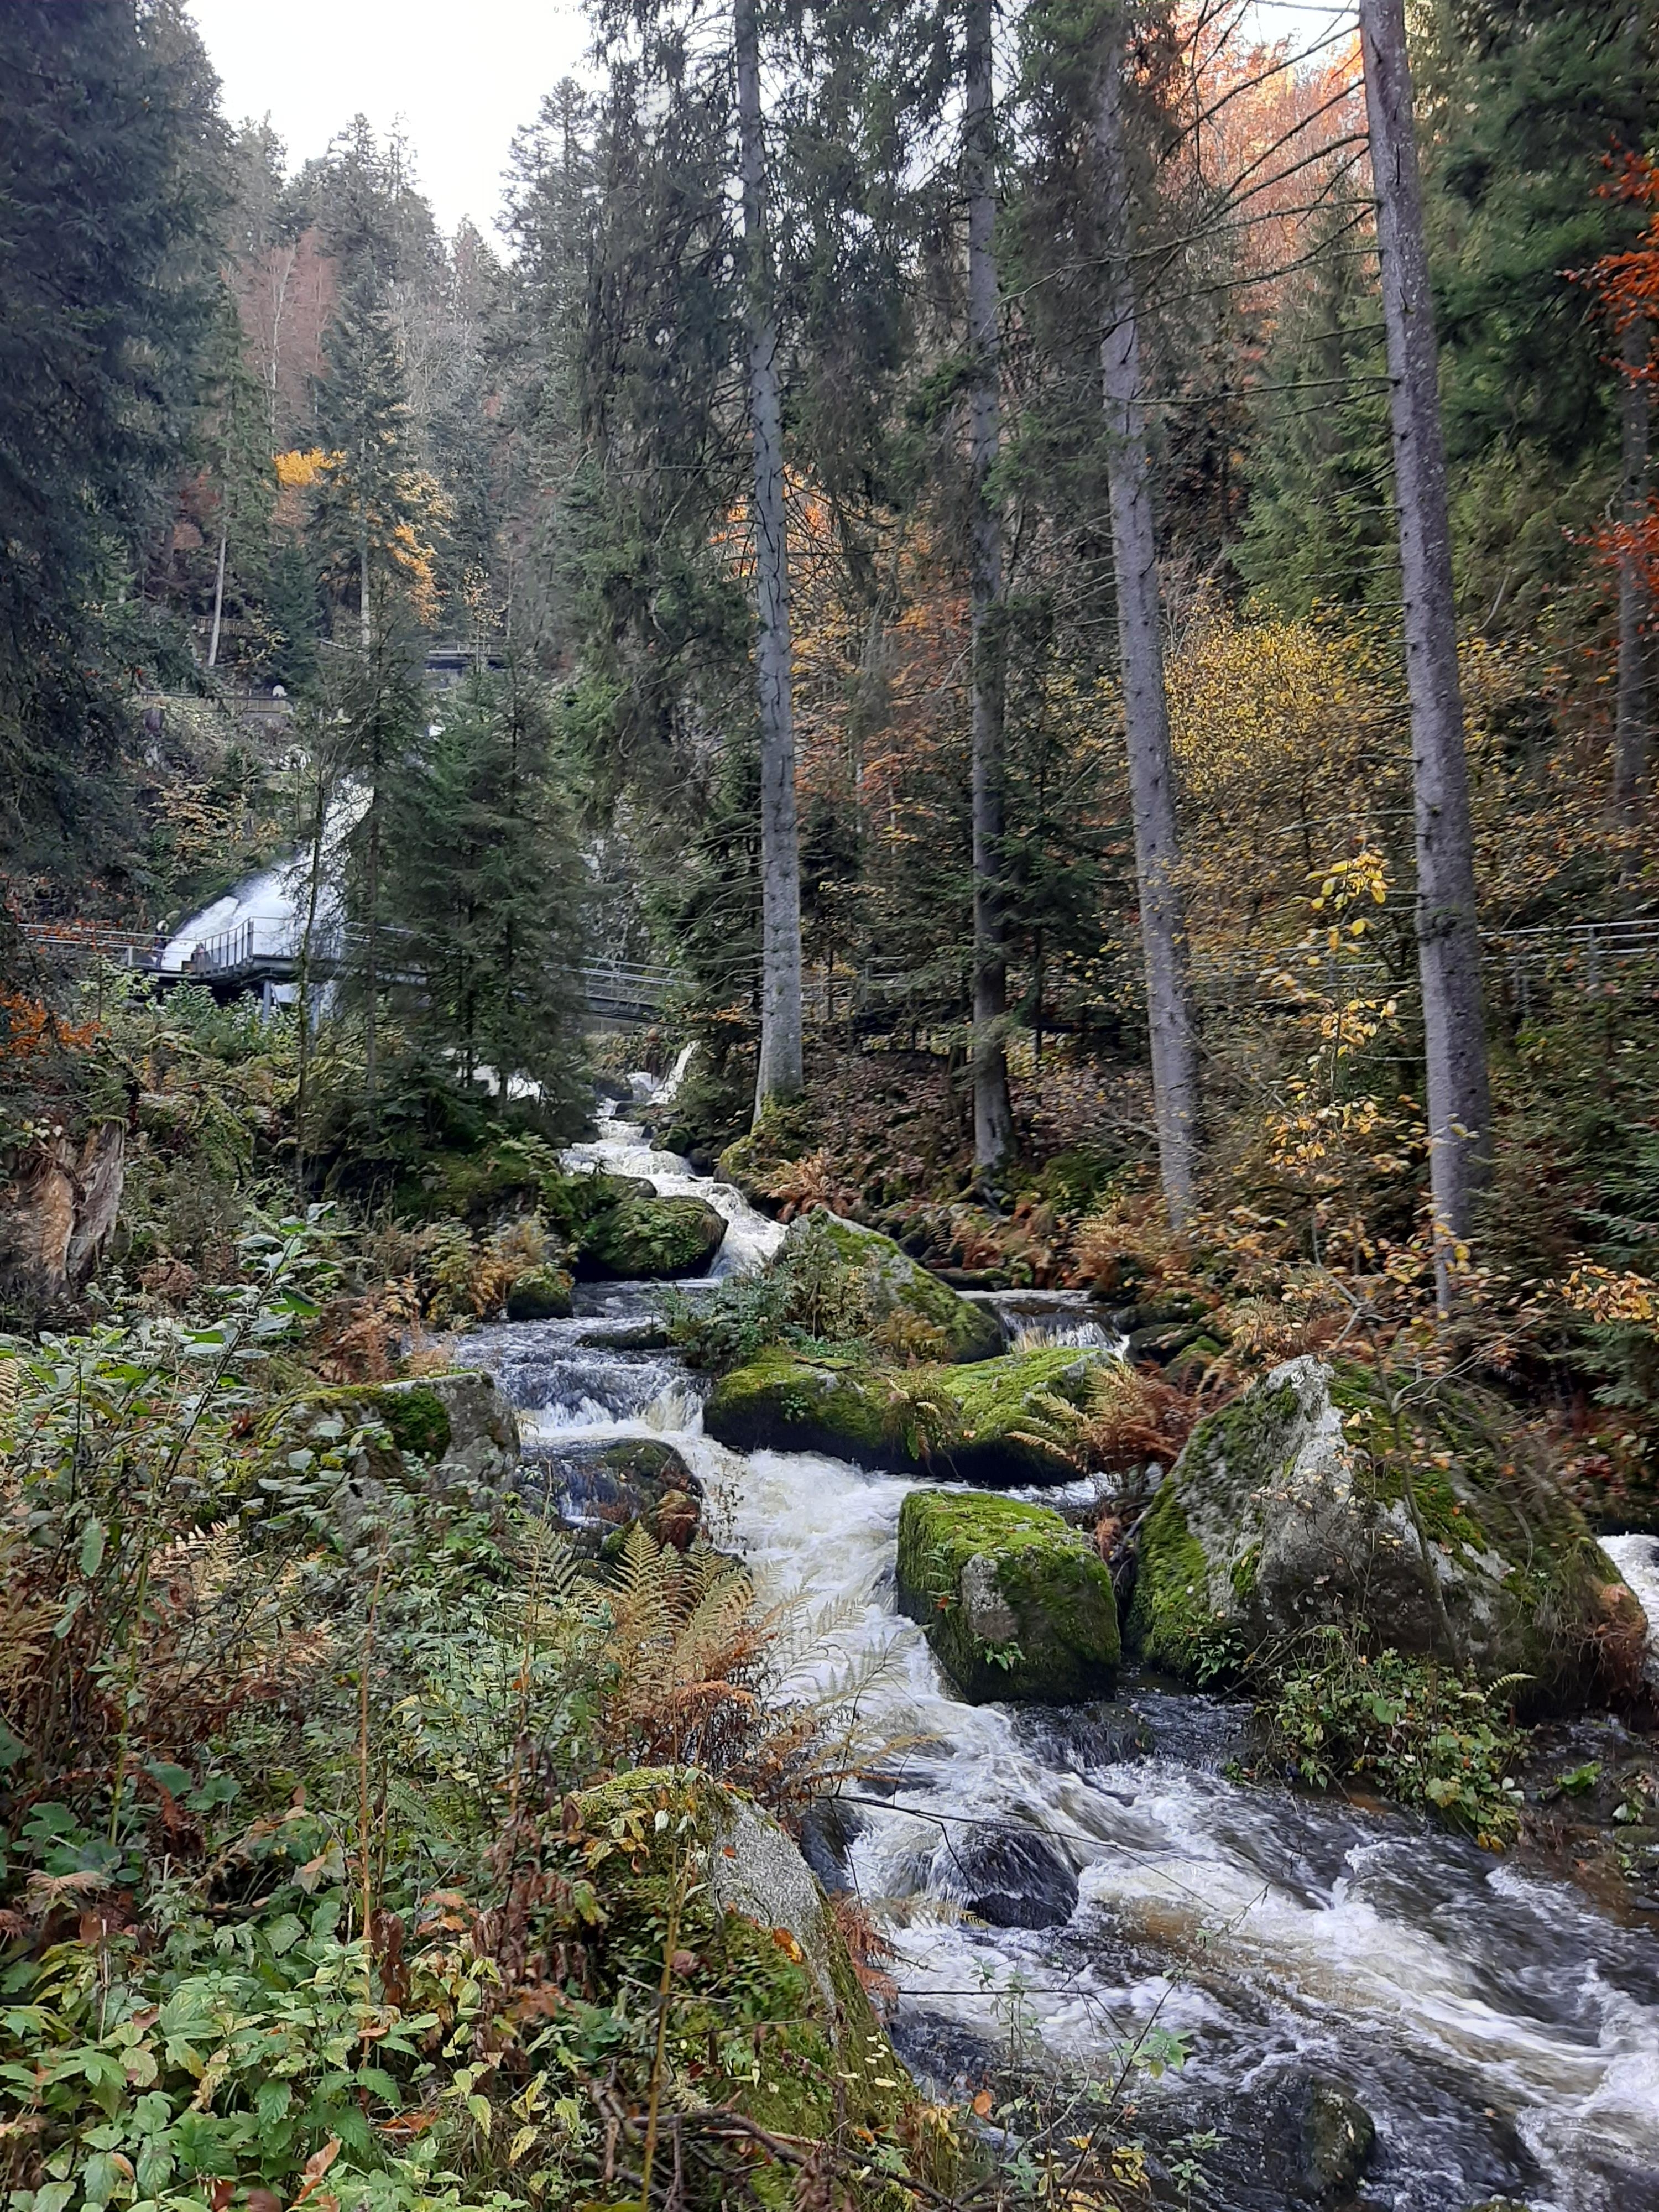 Deutschlands höchste Wasserfälle in Triberg. 
#Natur #Deutschland #Triberg #Wasserfall #Herbst